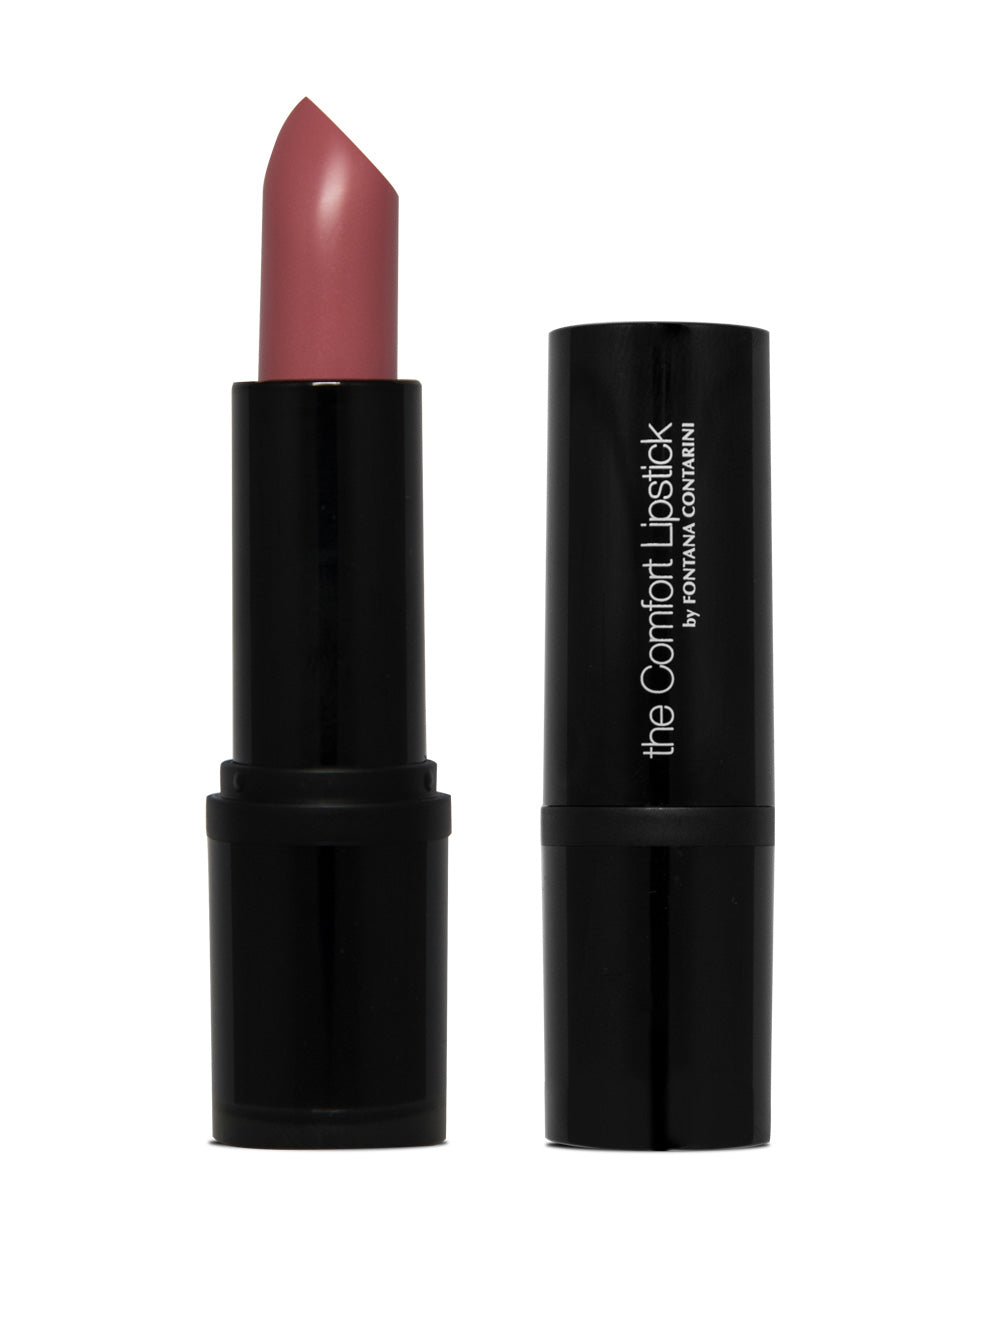 Fontana Contarini Rossetto Cremoso colore Peonia - The Comfort Lipstick 2C